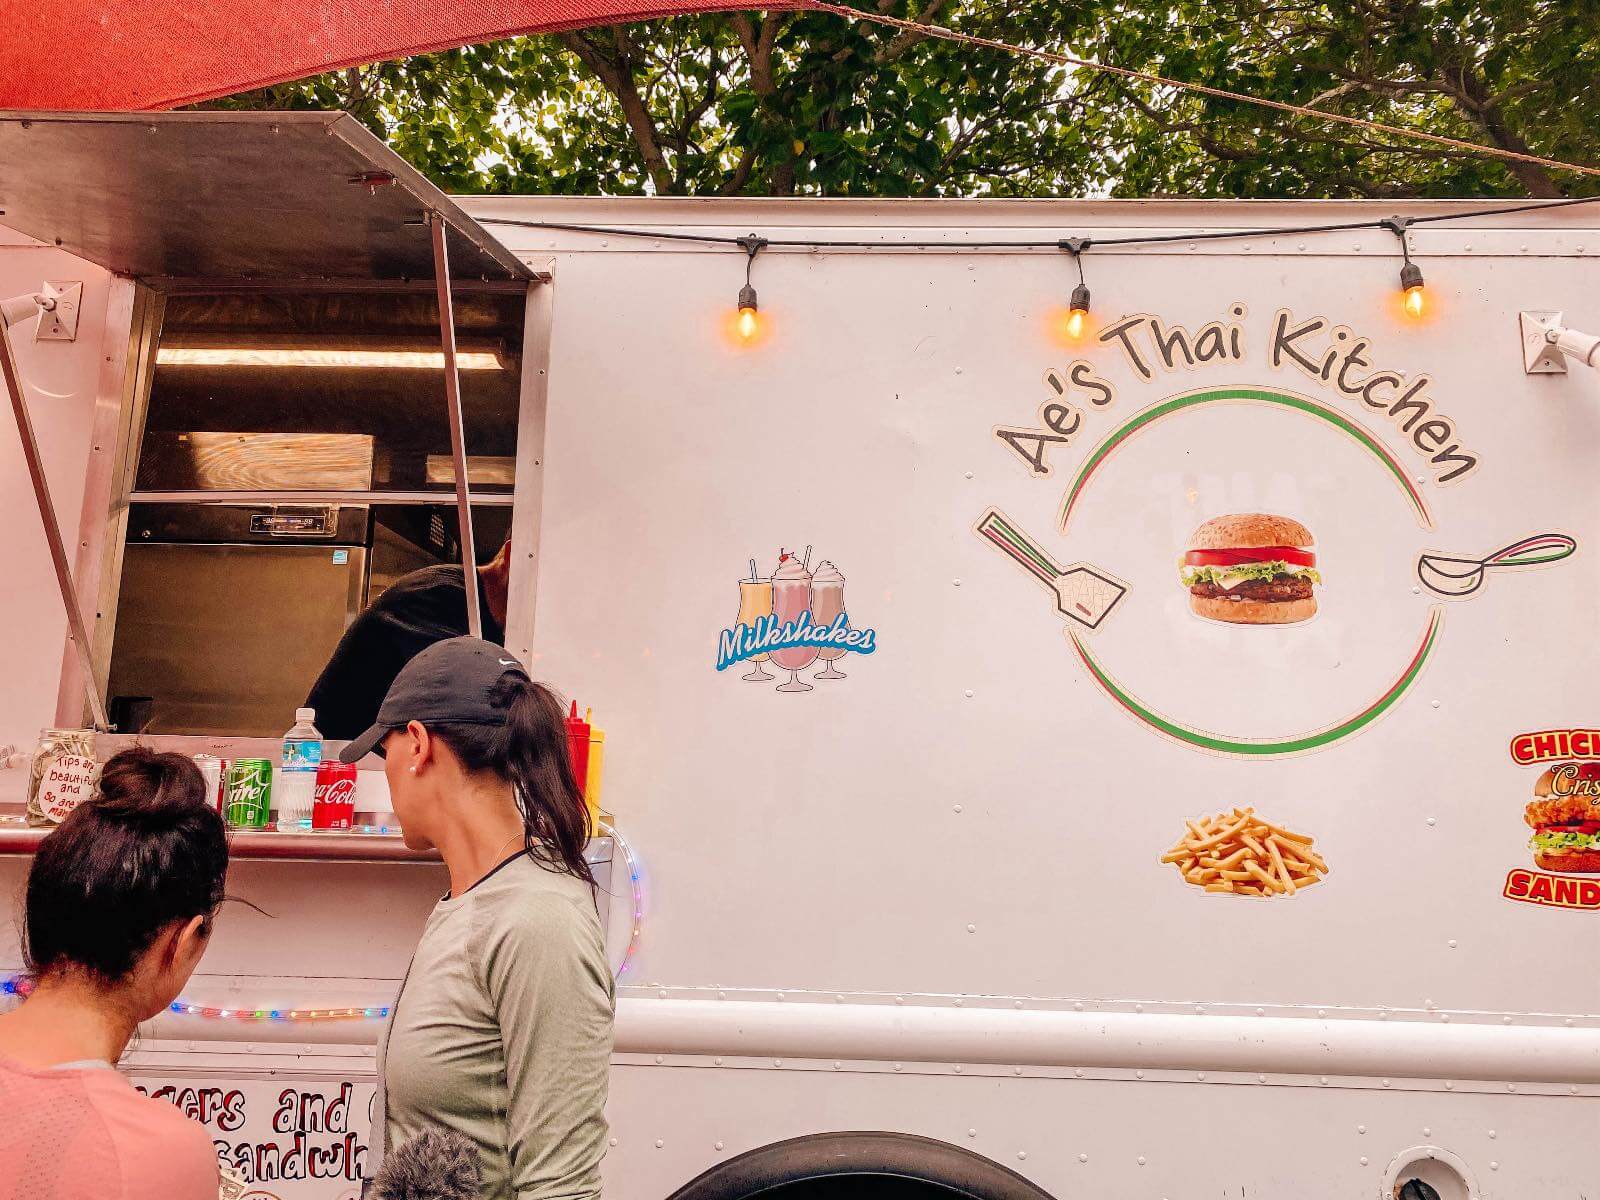 Ae's Thai Kitchen food truck